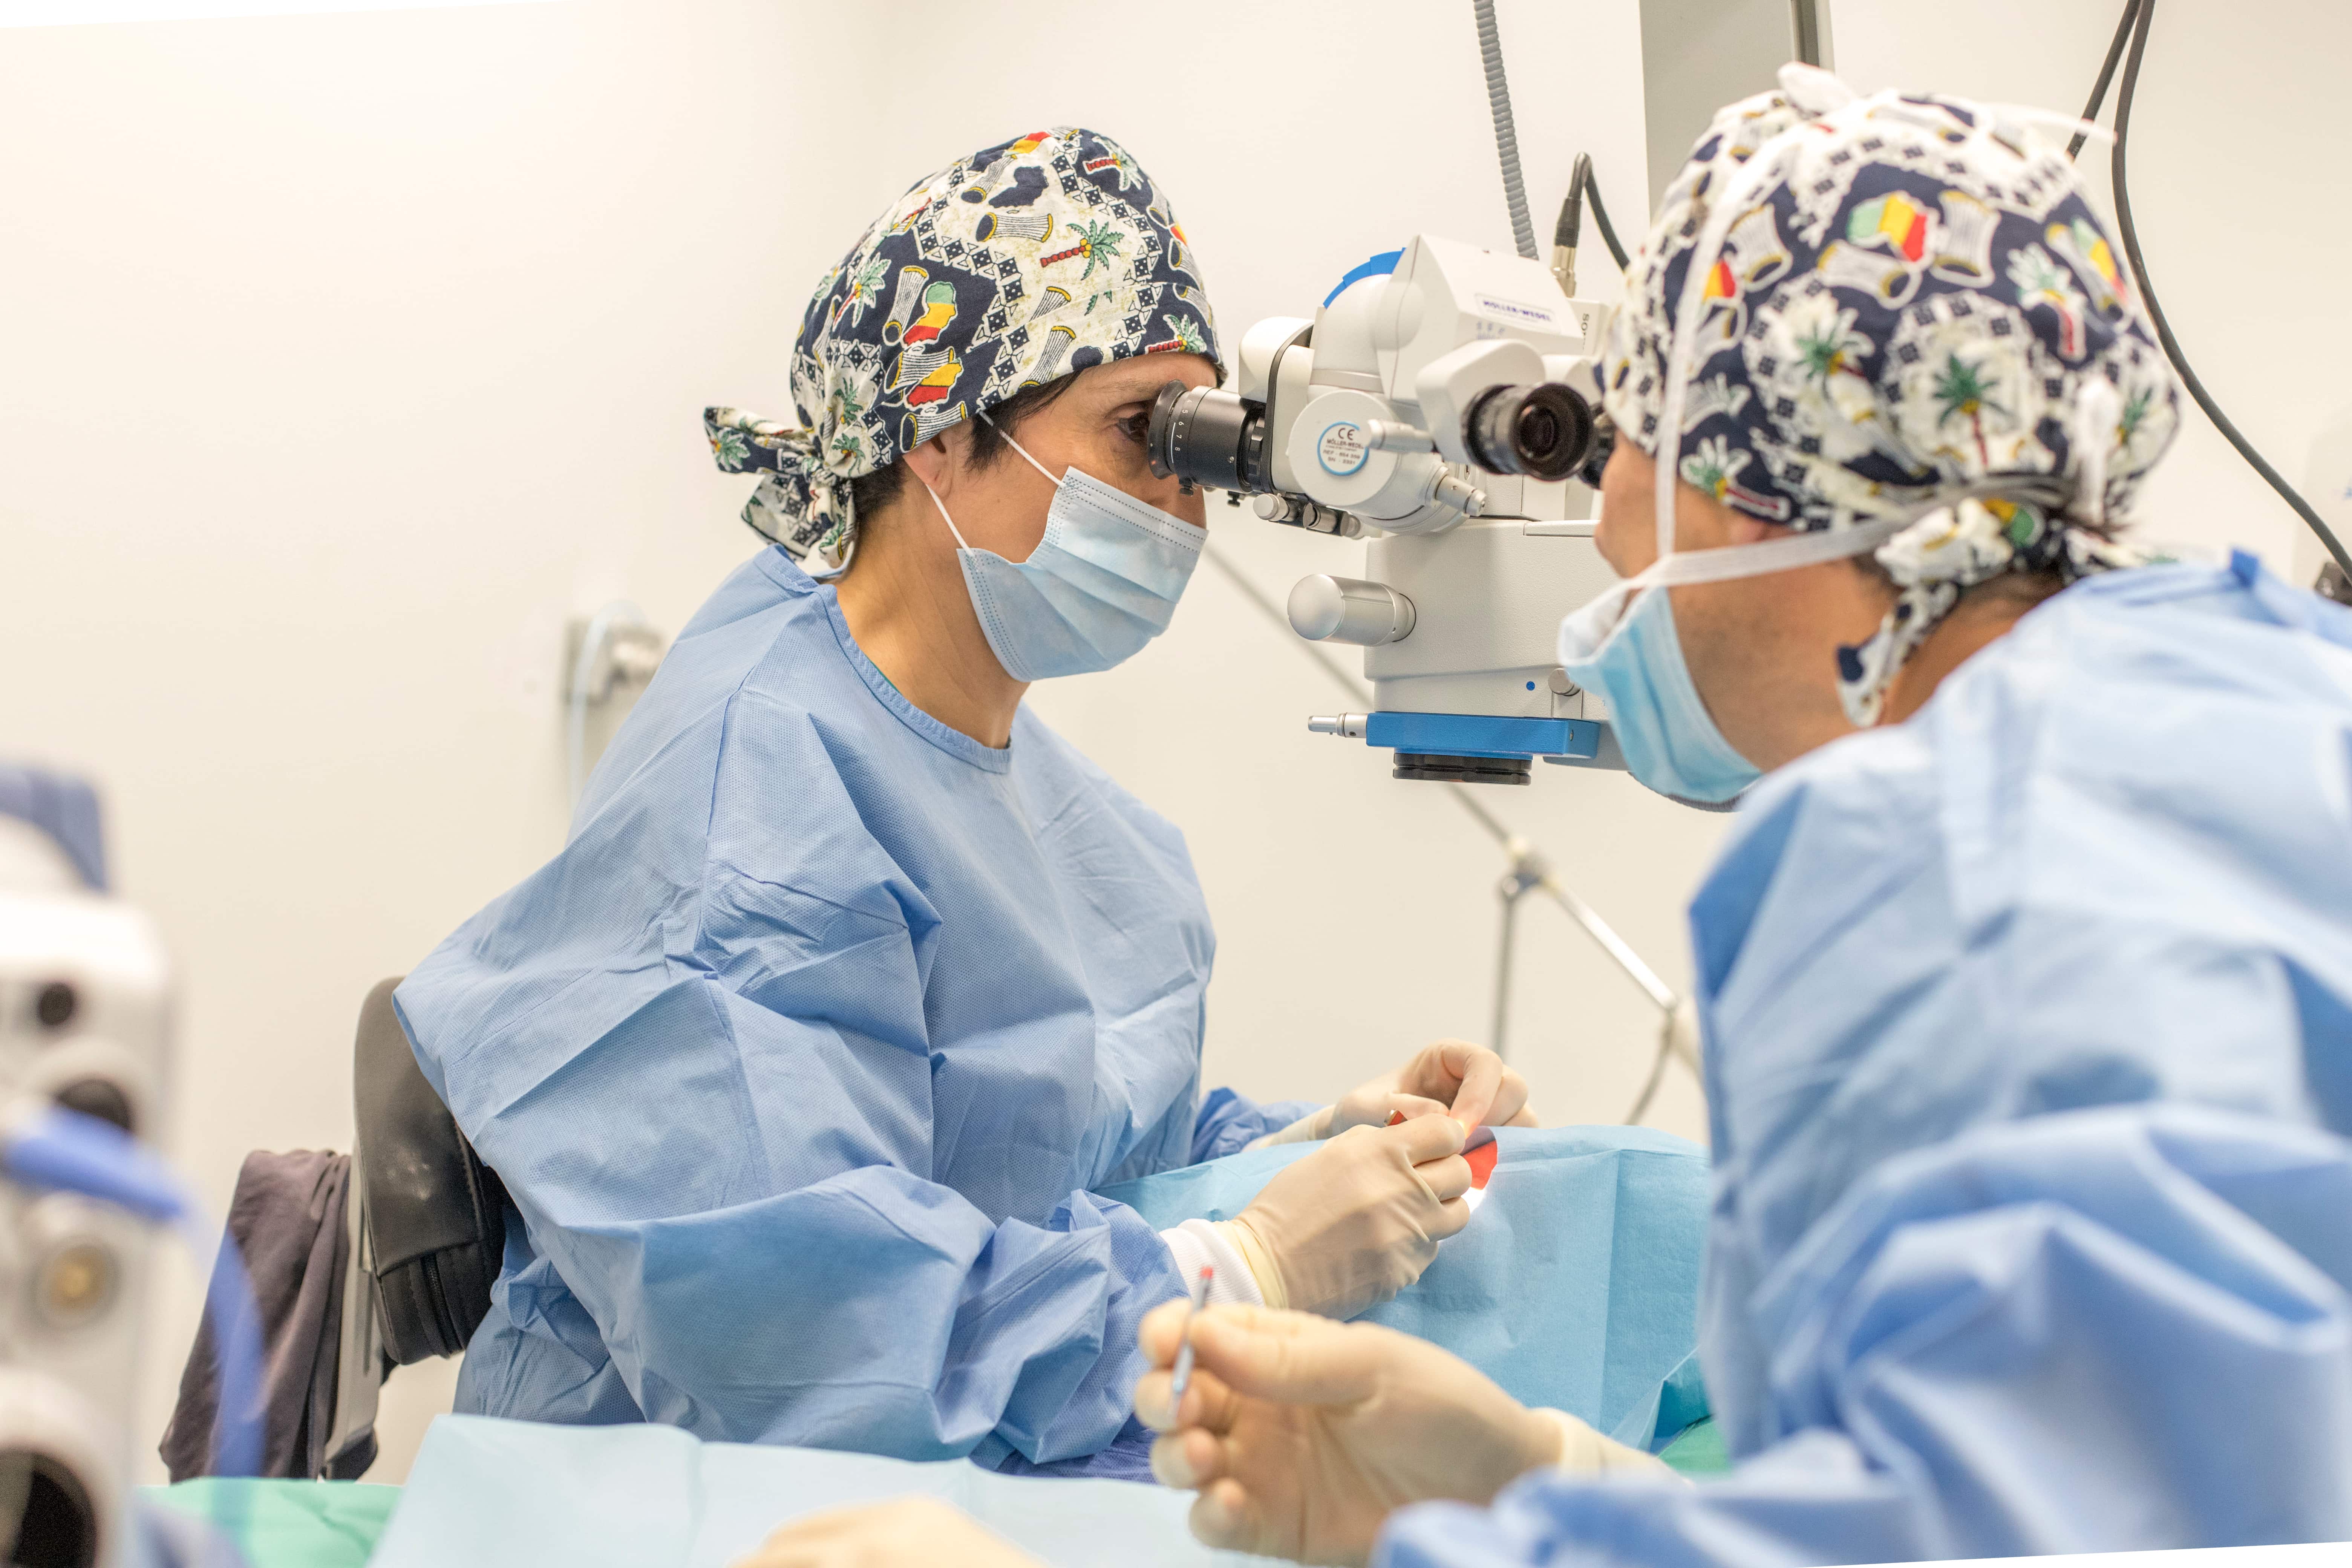 Cirugía Oculoplástica - Instituto Gallego de Cirugía Ocular en Ferrol